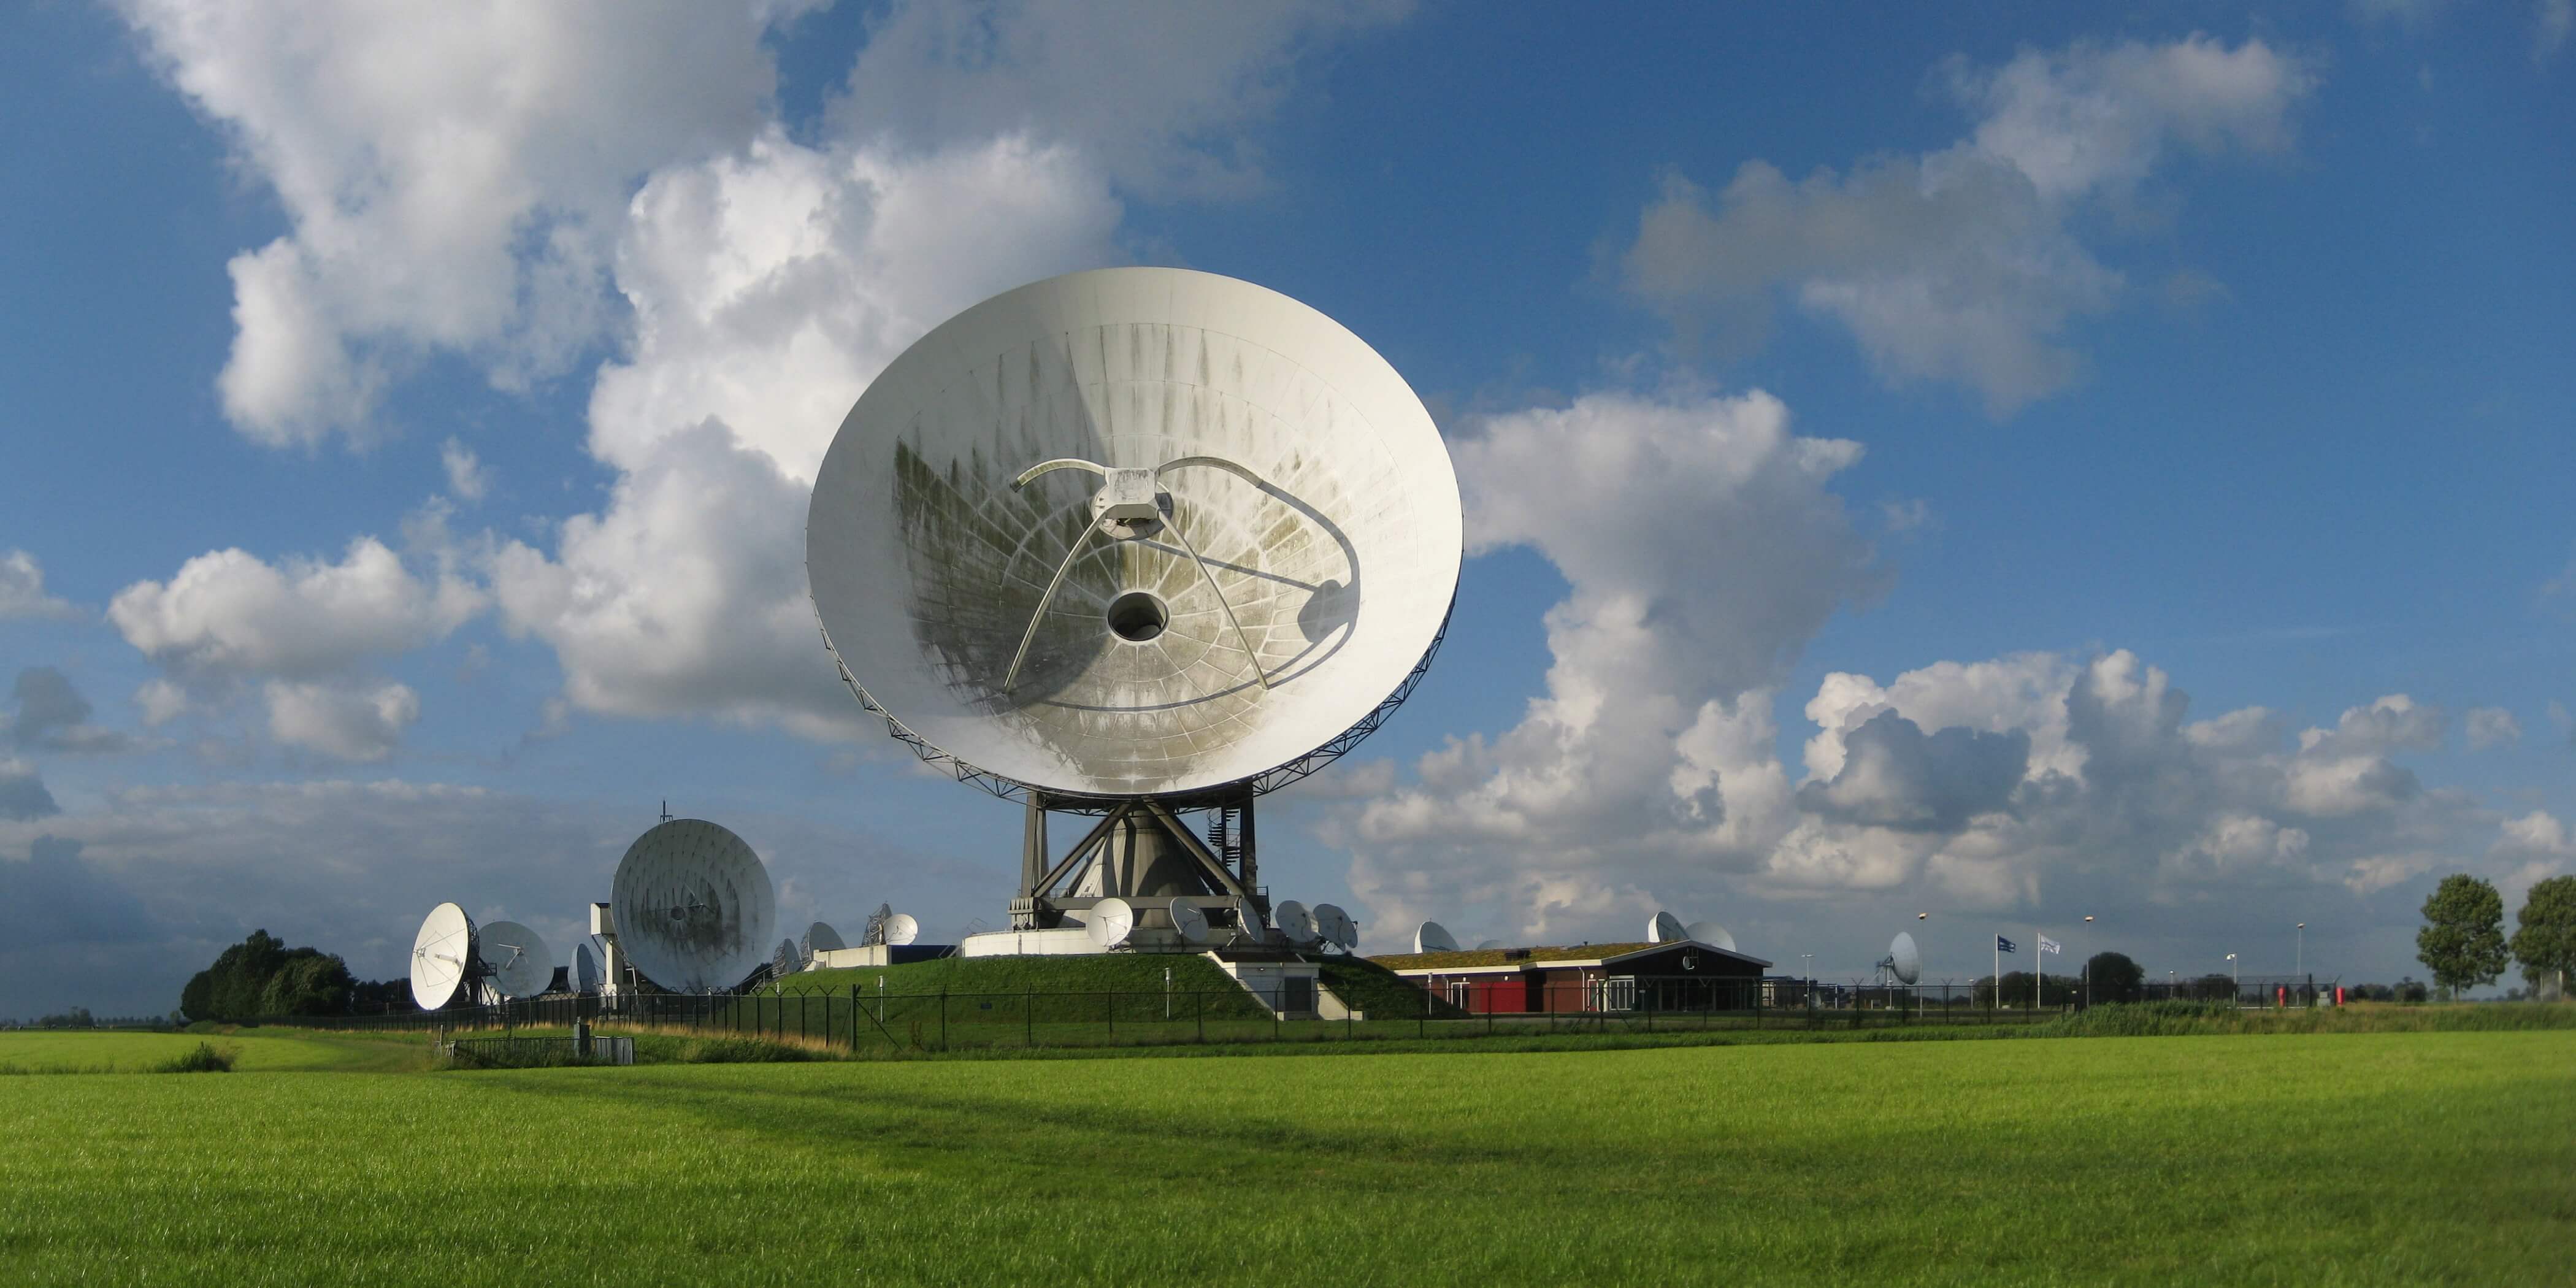 DeJong-Braat-Satellietgrondstation van de Nationale SIGINT Organisatie (NSO) (2012) bij Burum, Friesland. © Wutsje - Wikimedia Commons - CC BY-SA 3.0